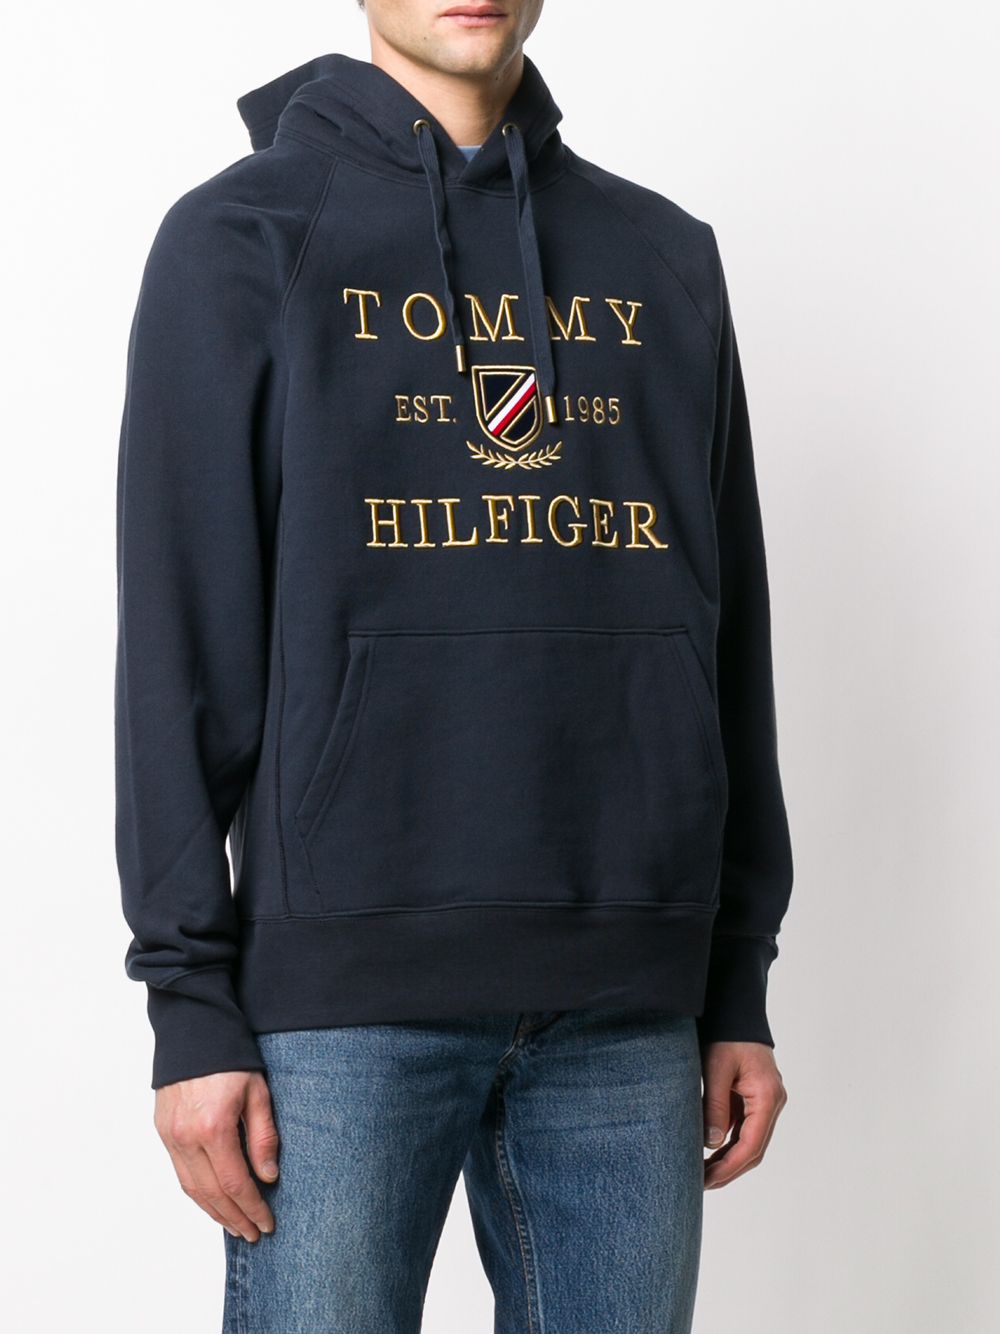 фото Tommy Hilfiger худи с вышитым логотипом